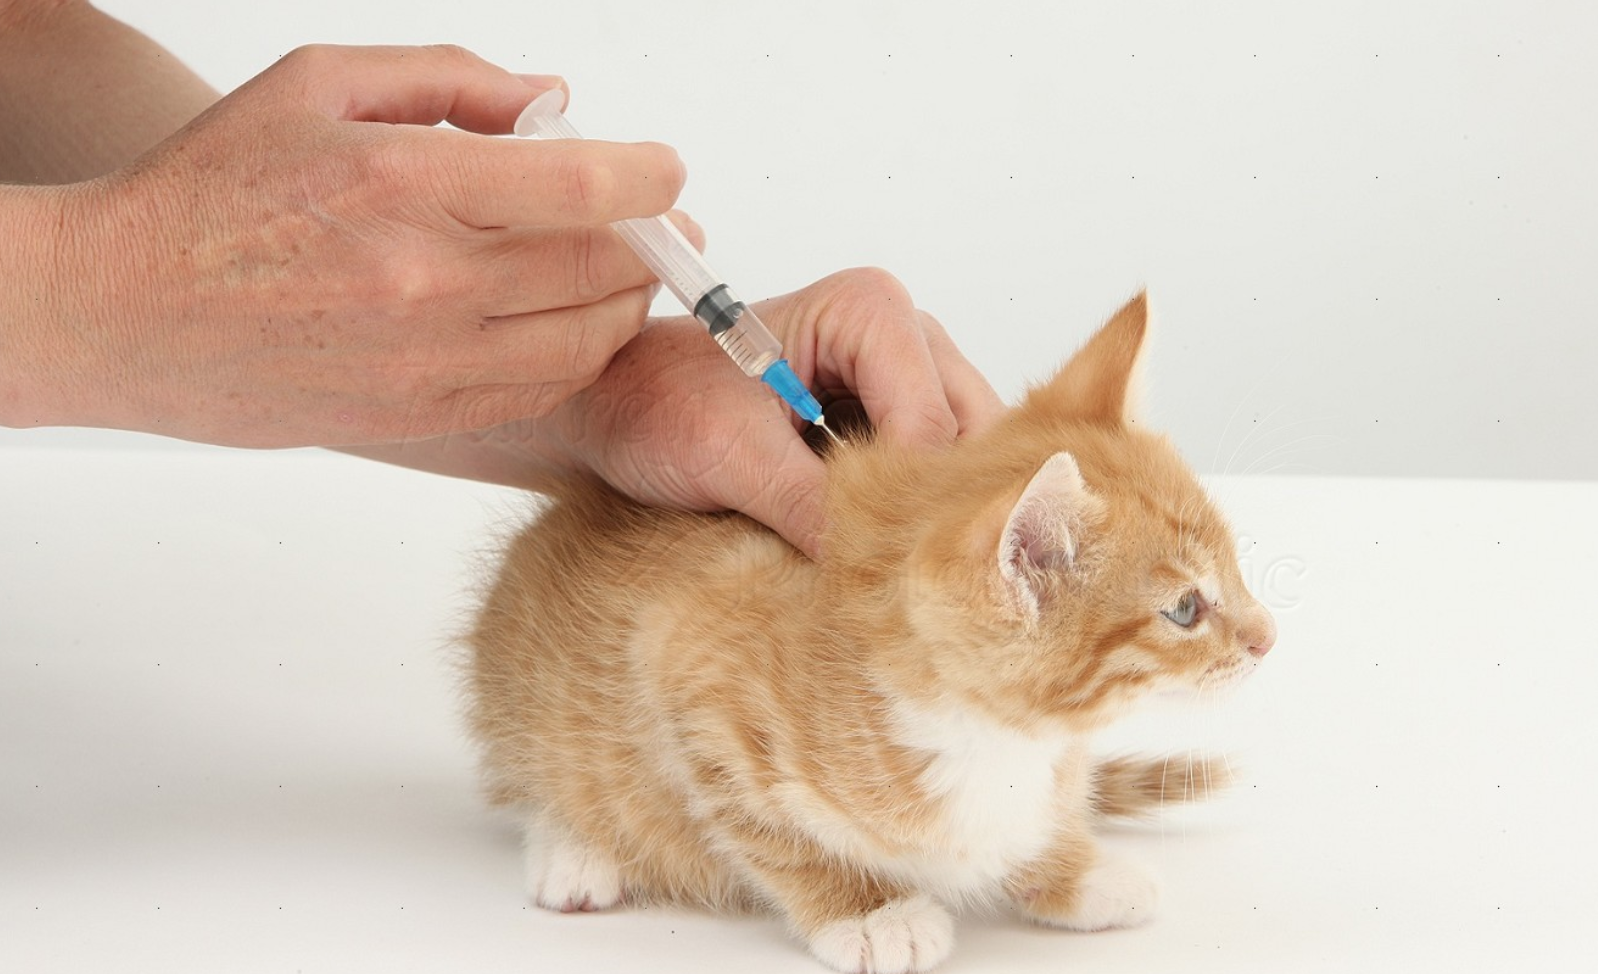 Сколько стоят прививки для кошек. Укол в холку подкожно коту. Укол собаке подкожно в холку. Подкожный укол коту в холку. Укол кошке подкожно в холку.